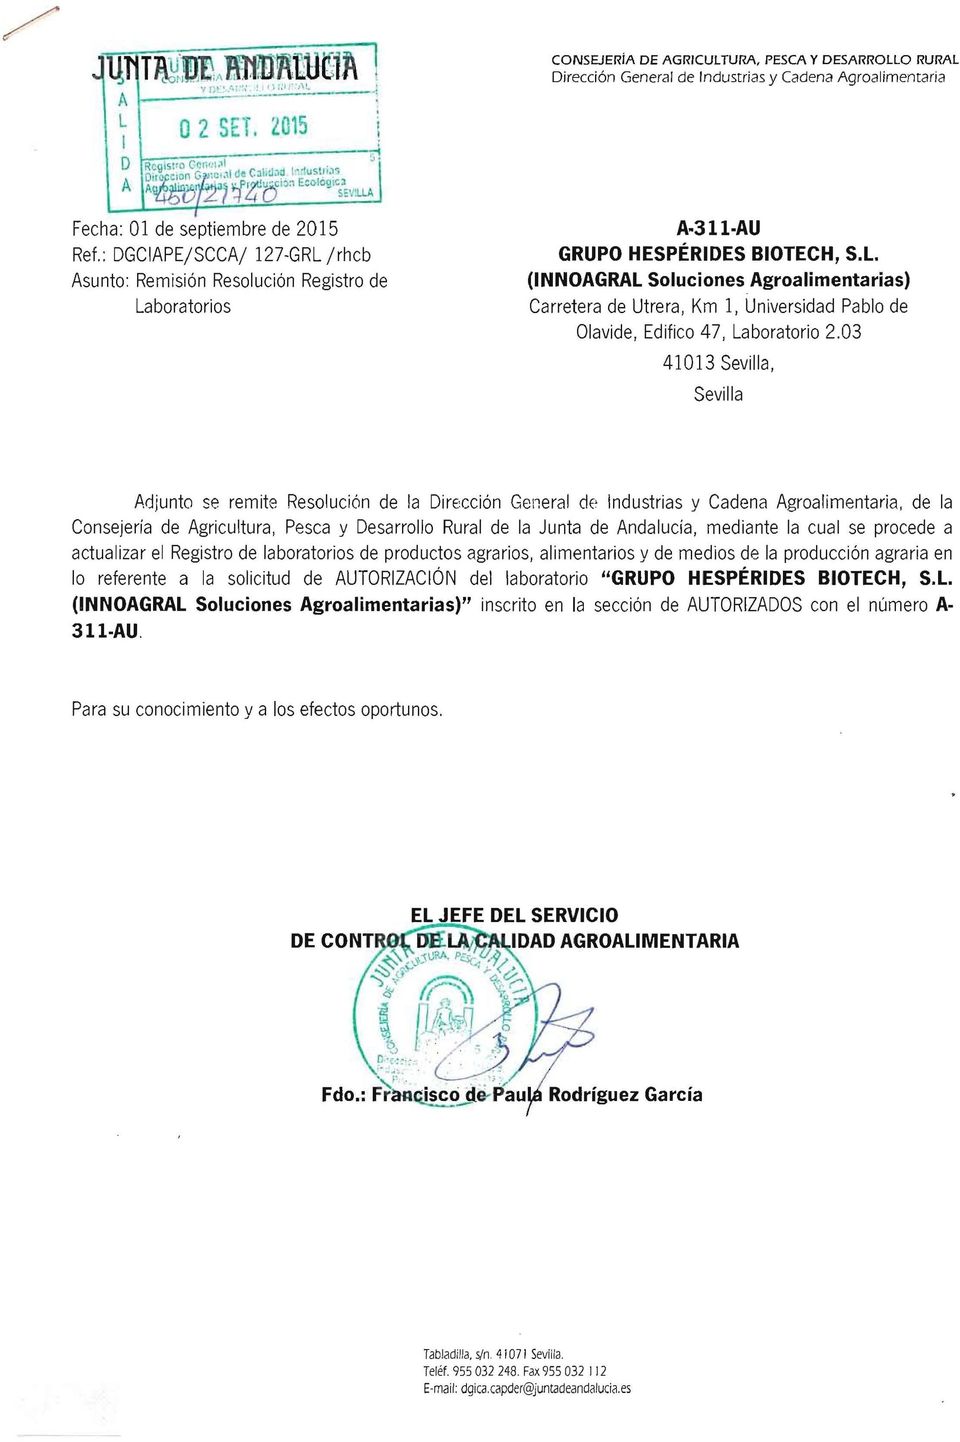 03 41013 Sevilla, Sevilla Adjunto se remite Resolución de la Dirección General de Industrias y Cadena Agroalimentaria, de la Consejería de Agricultura, Pesca y Desarrollo Rural de la Junta de